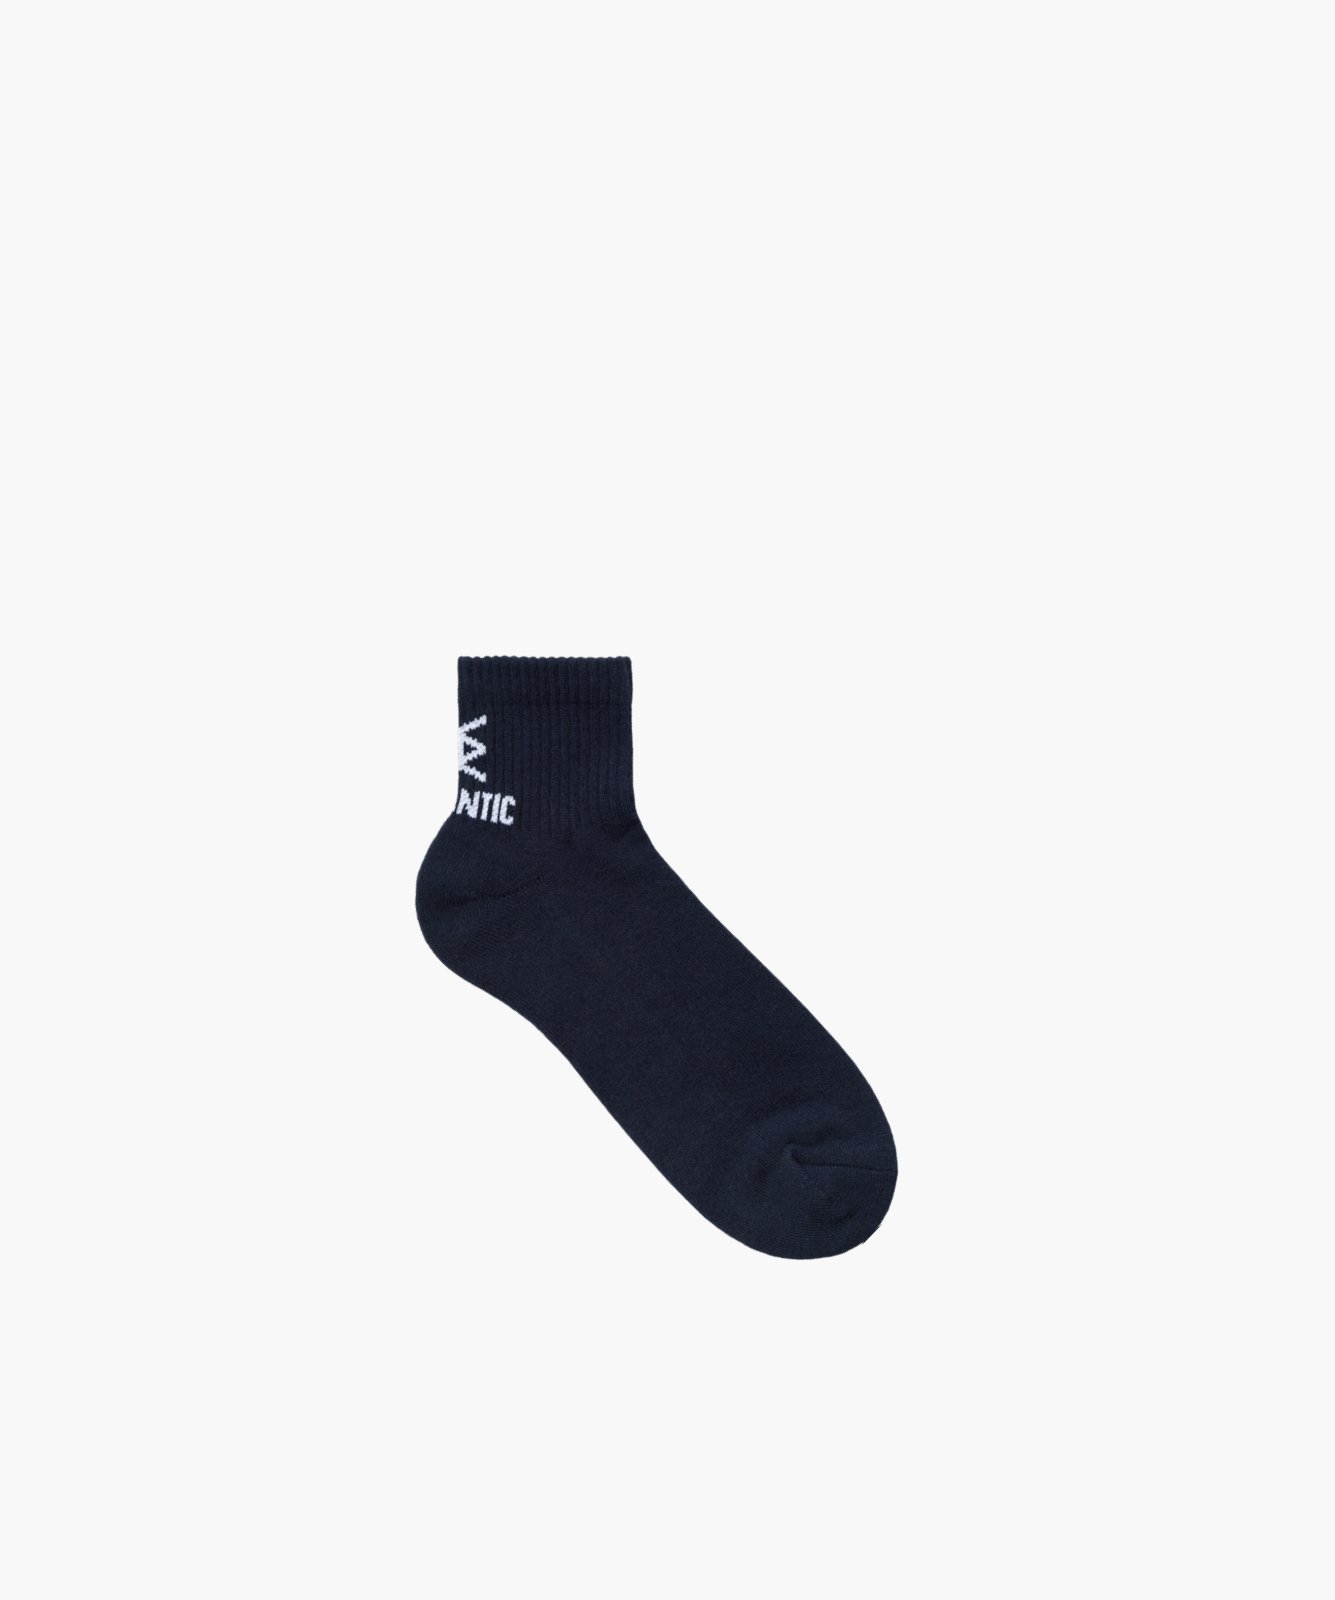 Спортивні махрові шкарпетки Atlantic MC-002_GRA, 39-42